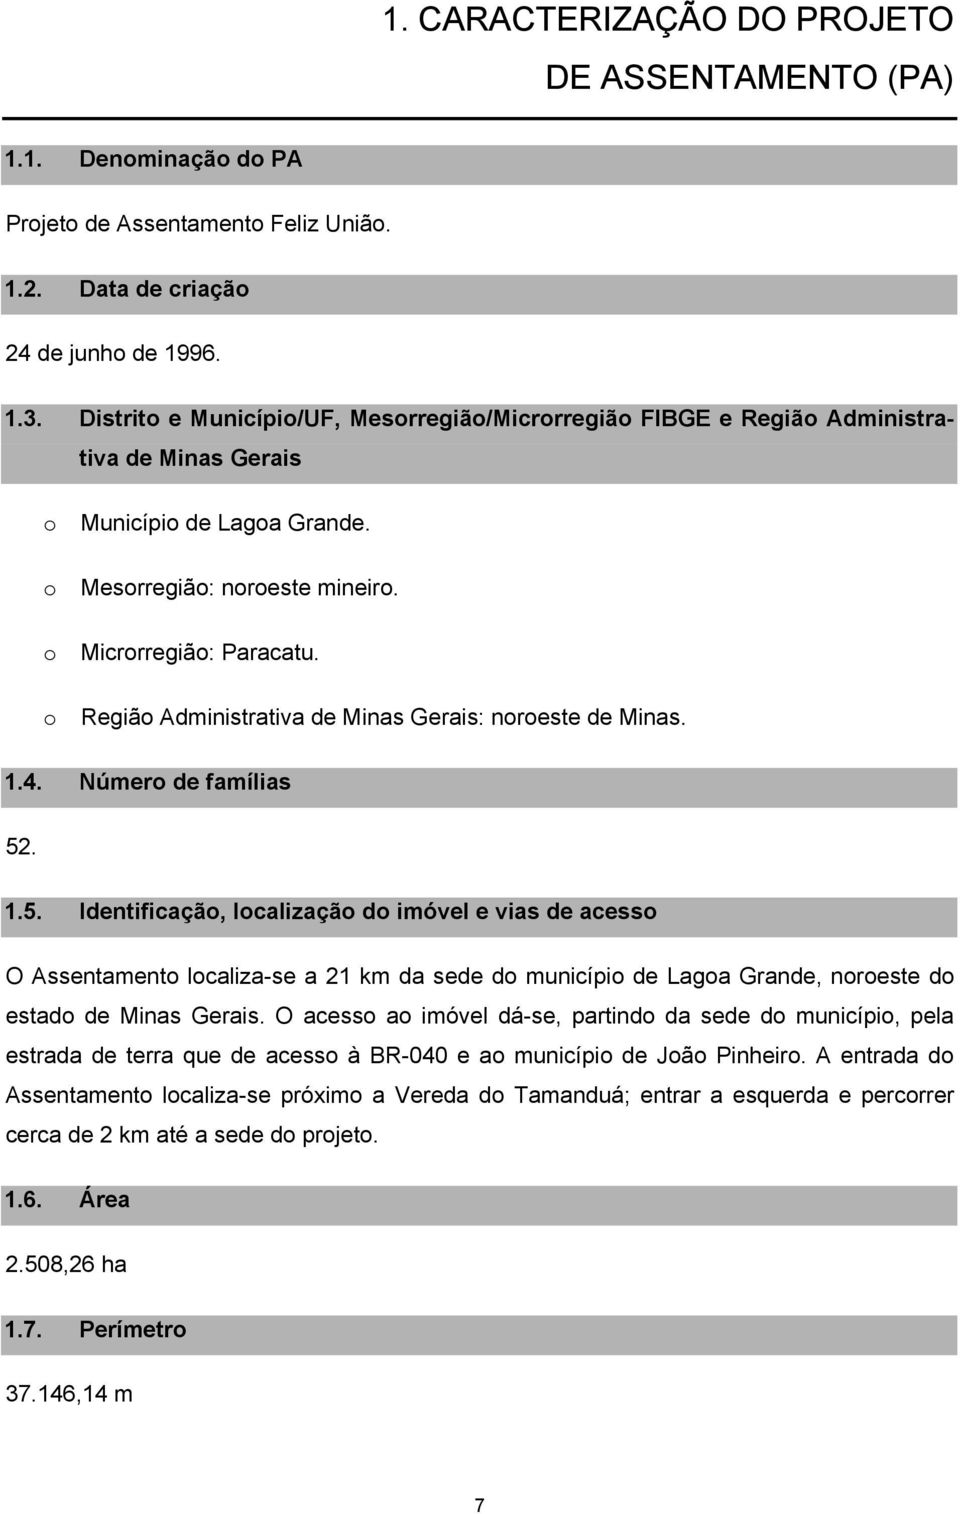 Regiã Administrativa de Minas Gerais: nreste de Minas. 1.4. Númer de famílias 52